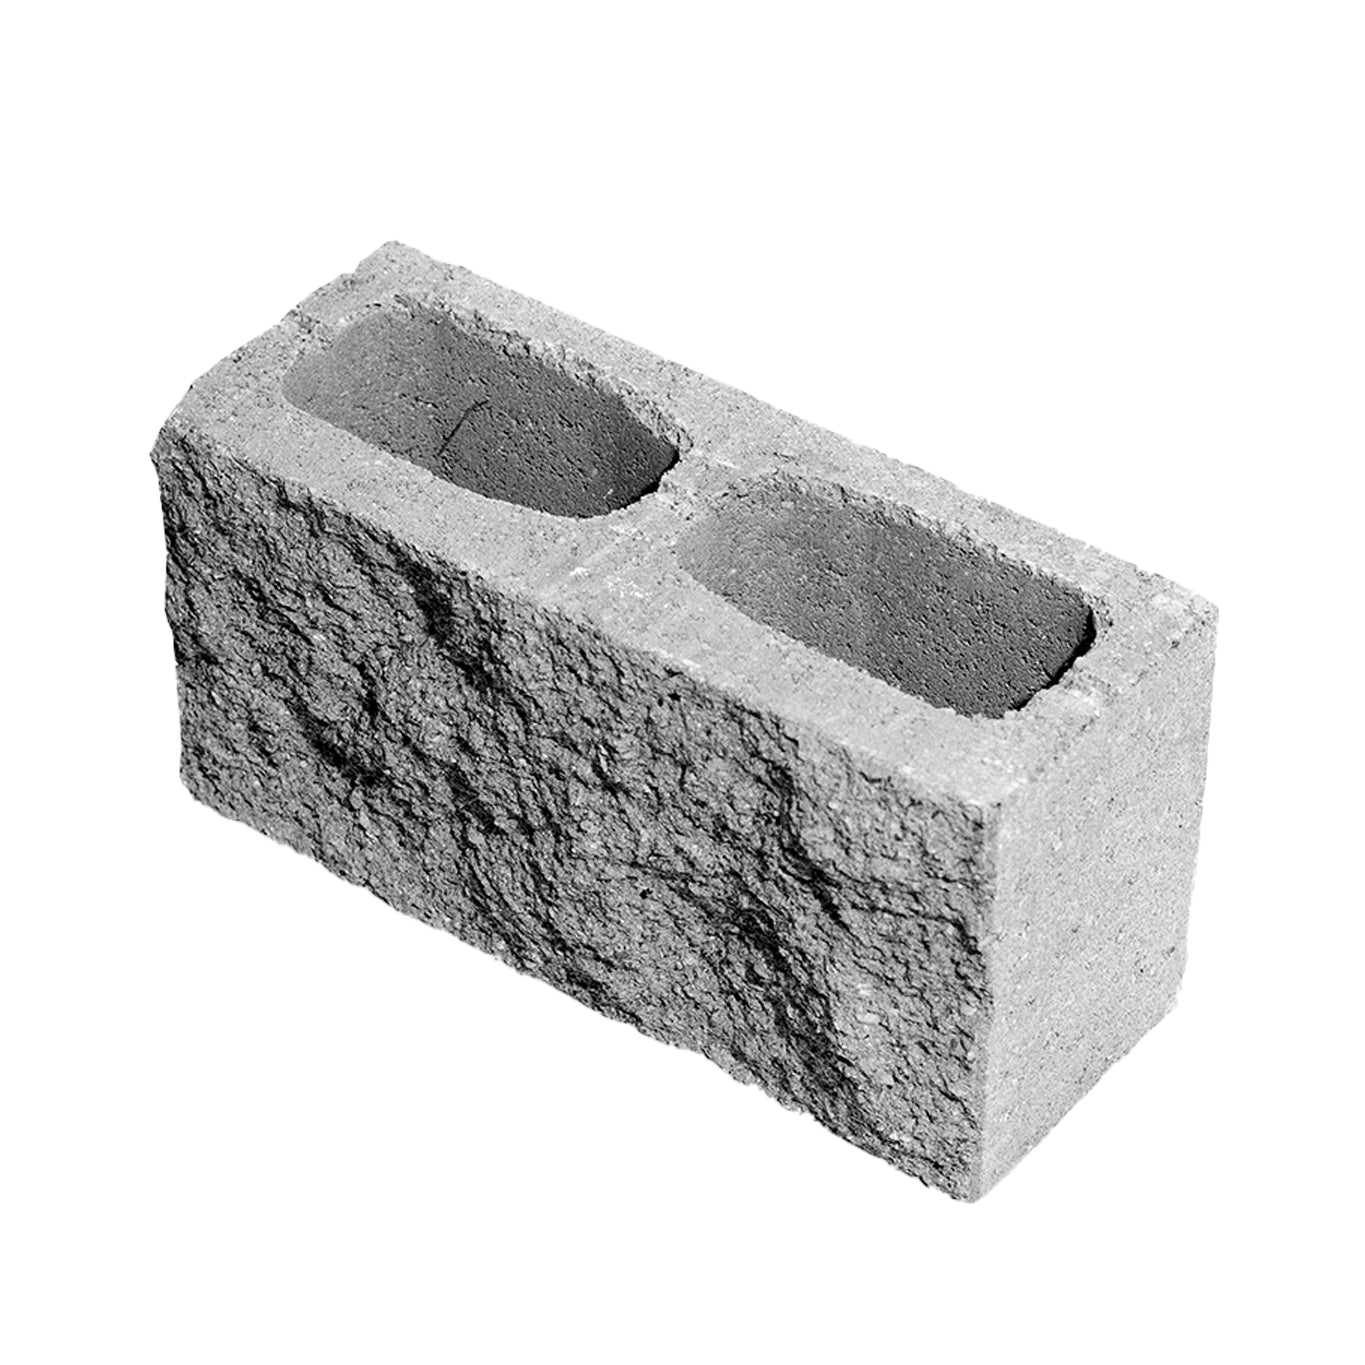 comprender crédito Explosivos Bloque de concreto decorativo de 6" x 8" x 16" (15x20x40 cm) – Panablock